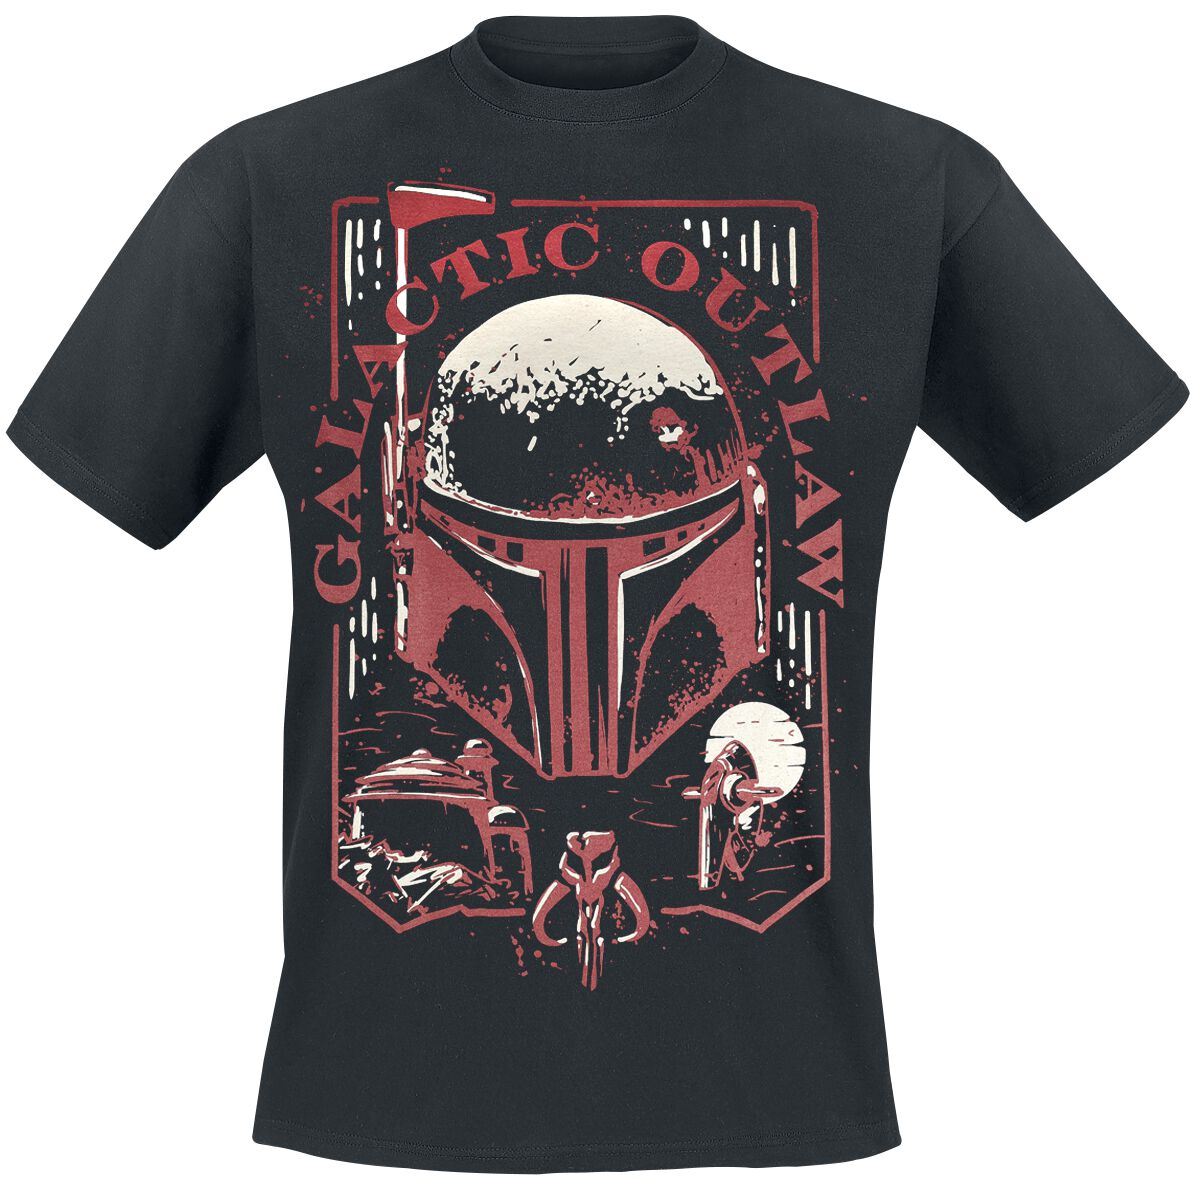 Star Wars T-Shirt - The Book Of Boba Fett - Galactic Outlaw - S bis 4XL - für Männer - Größe XL - schwarz  - EMP exklusives Merchandise!